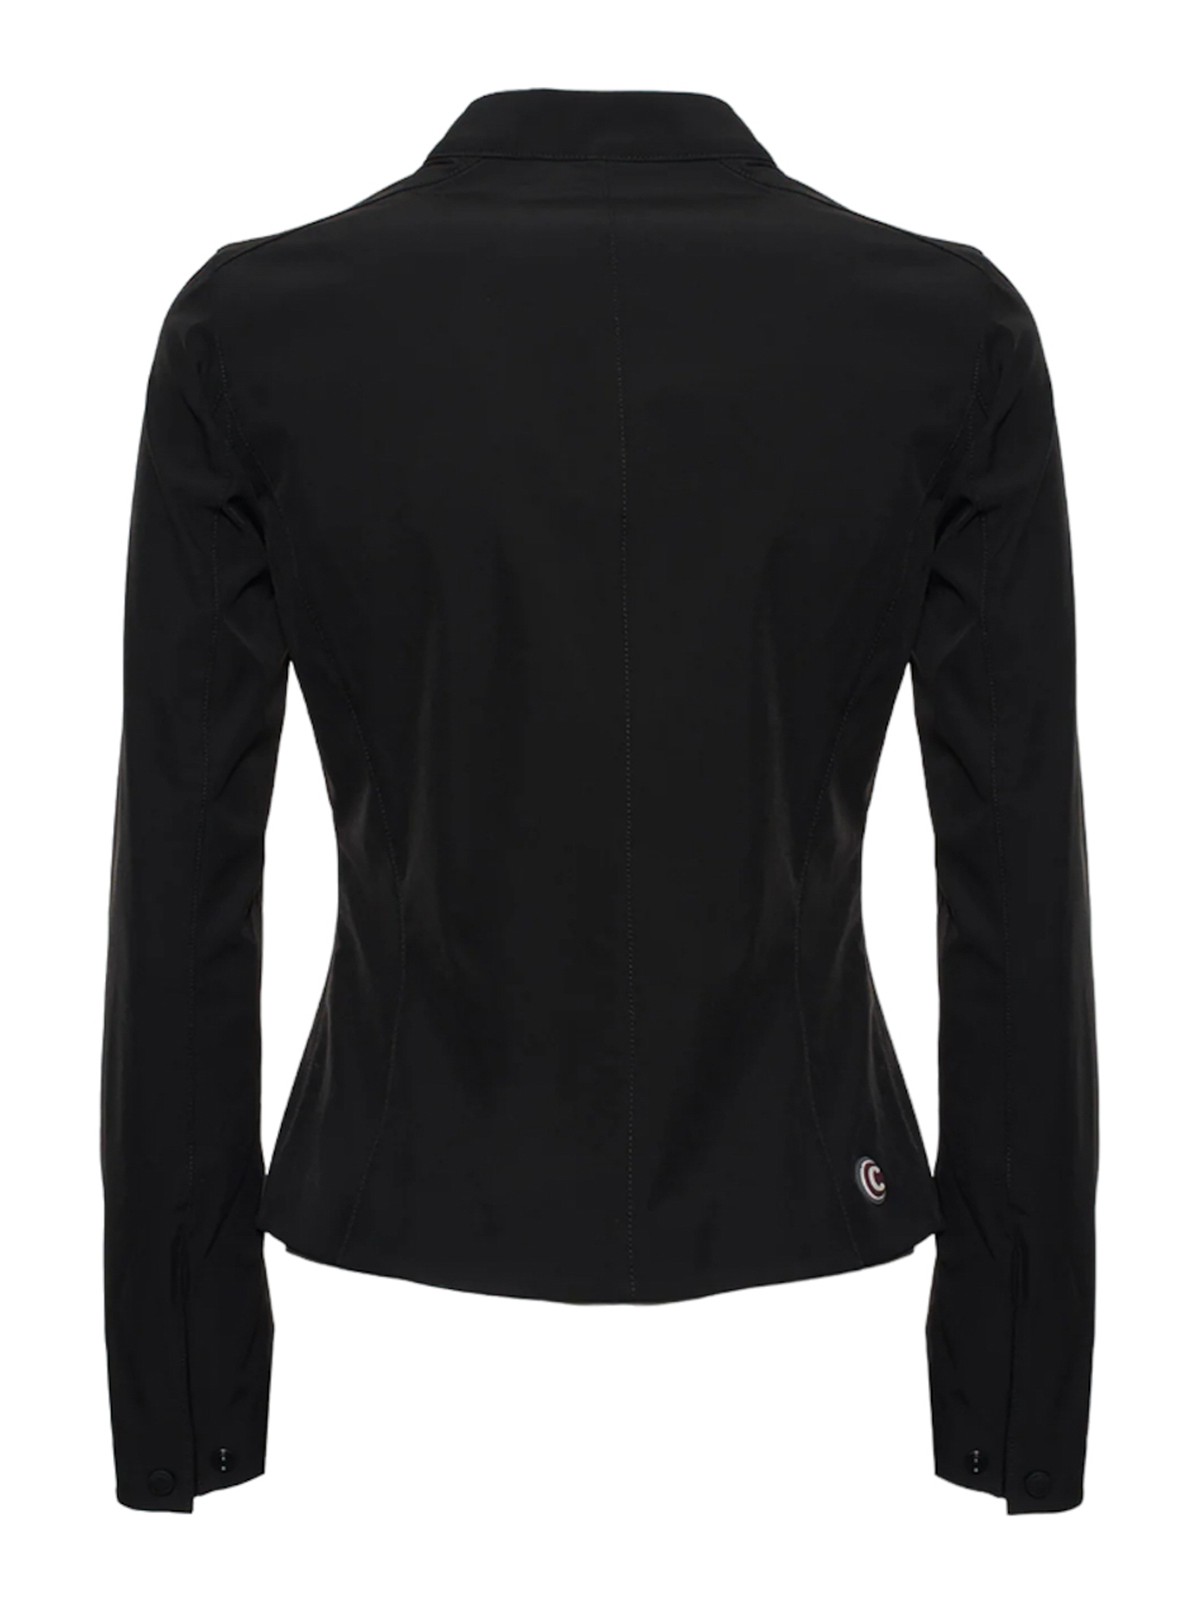 Shop Colmar Originals Black Casual Jacket